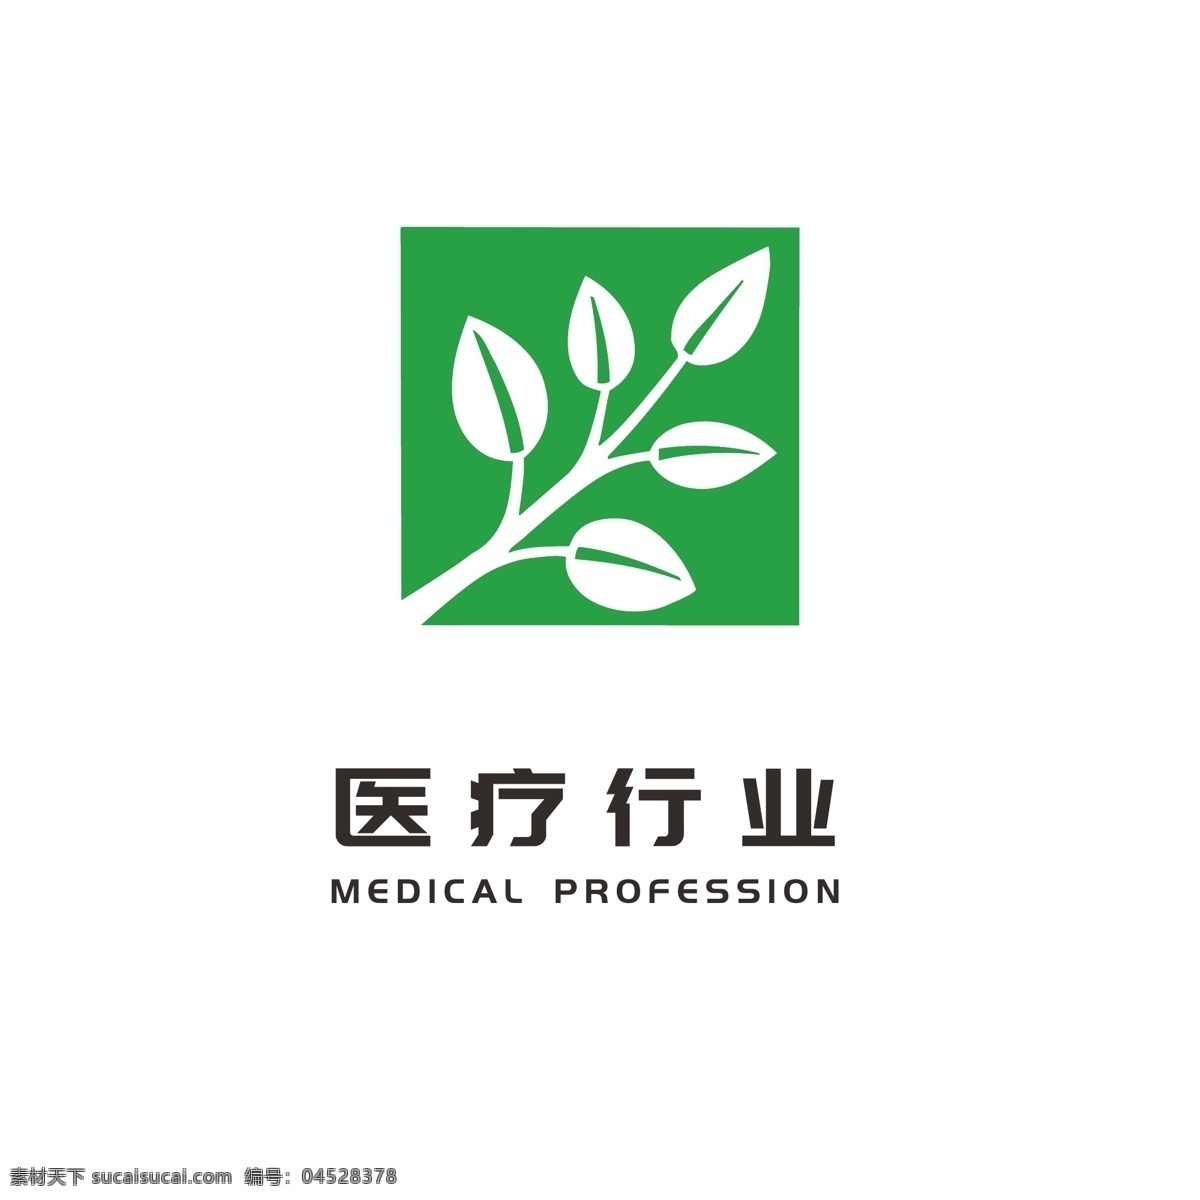 医疗 行业 卫生保健 医药 logo 大众 通用 标志 绿色logo 树叶logo 简约logo 小 清新 医疗卫生 通用logo